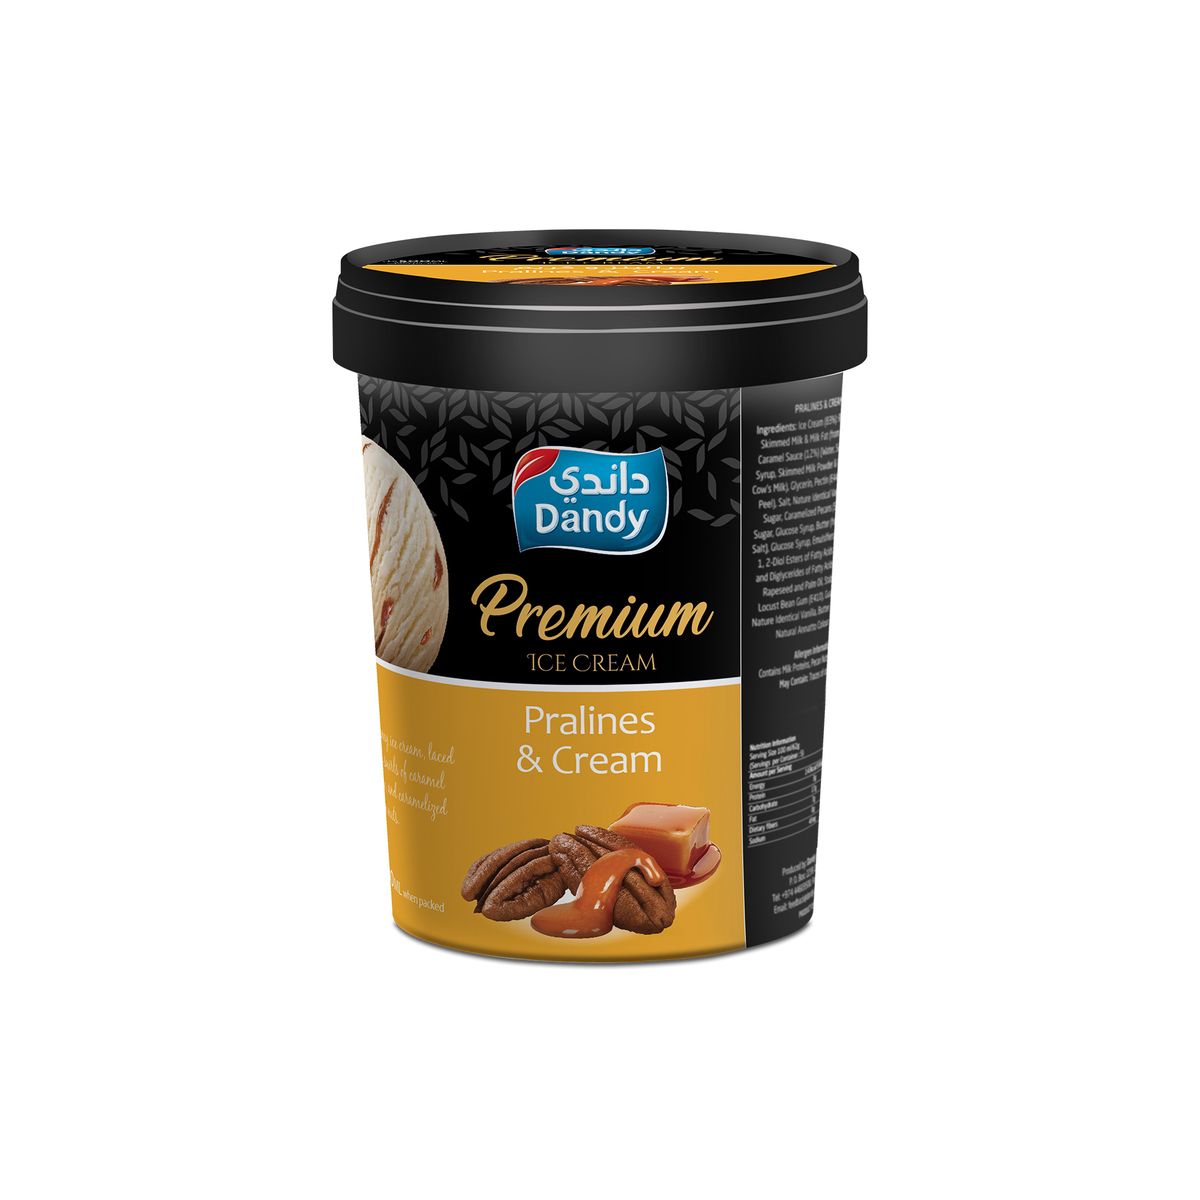 Dandy Premium Ice Cream Pralines & Cream 500ml